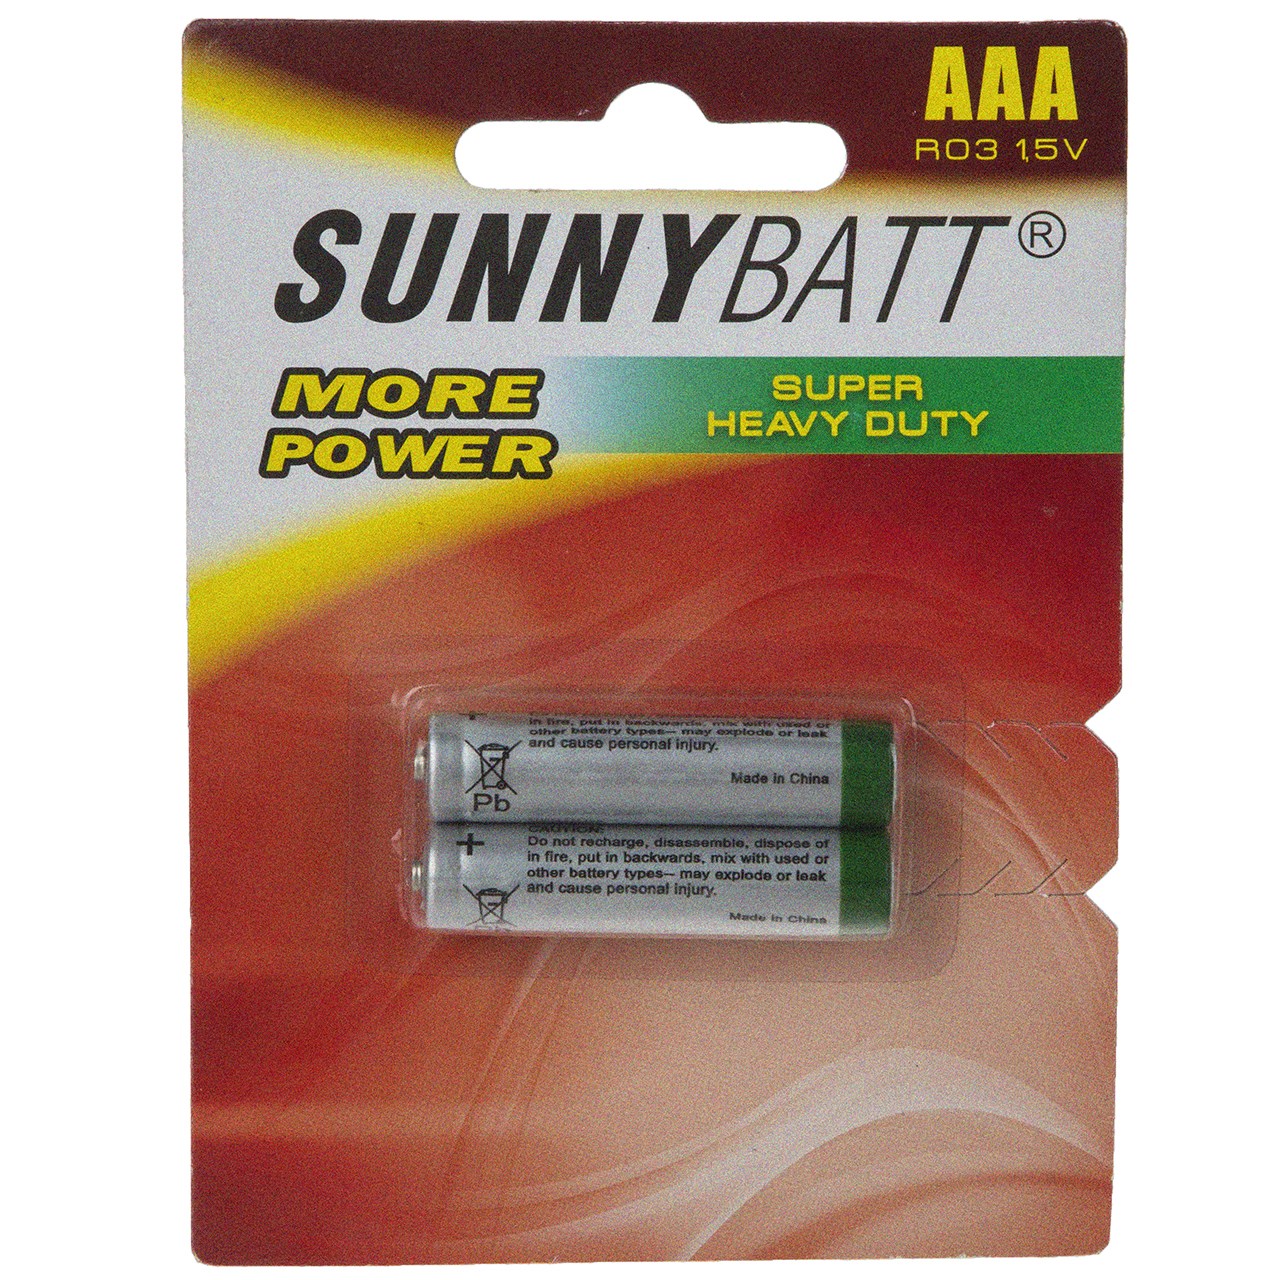 باتری نیم قلمی سانی بت مدل Super Heavy Duty بسته 2 عددی